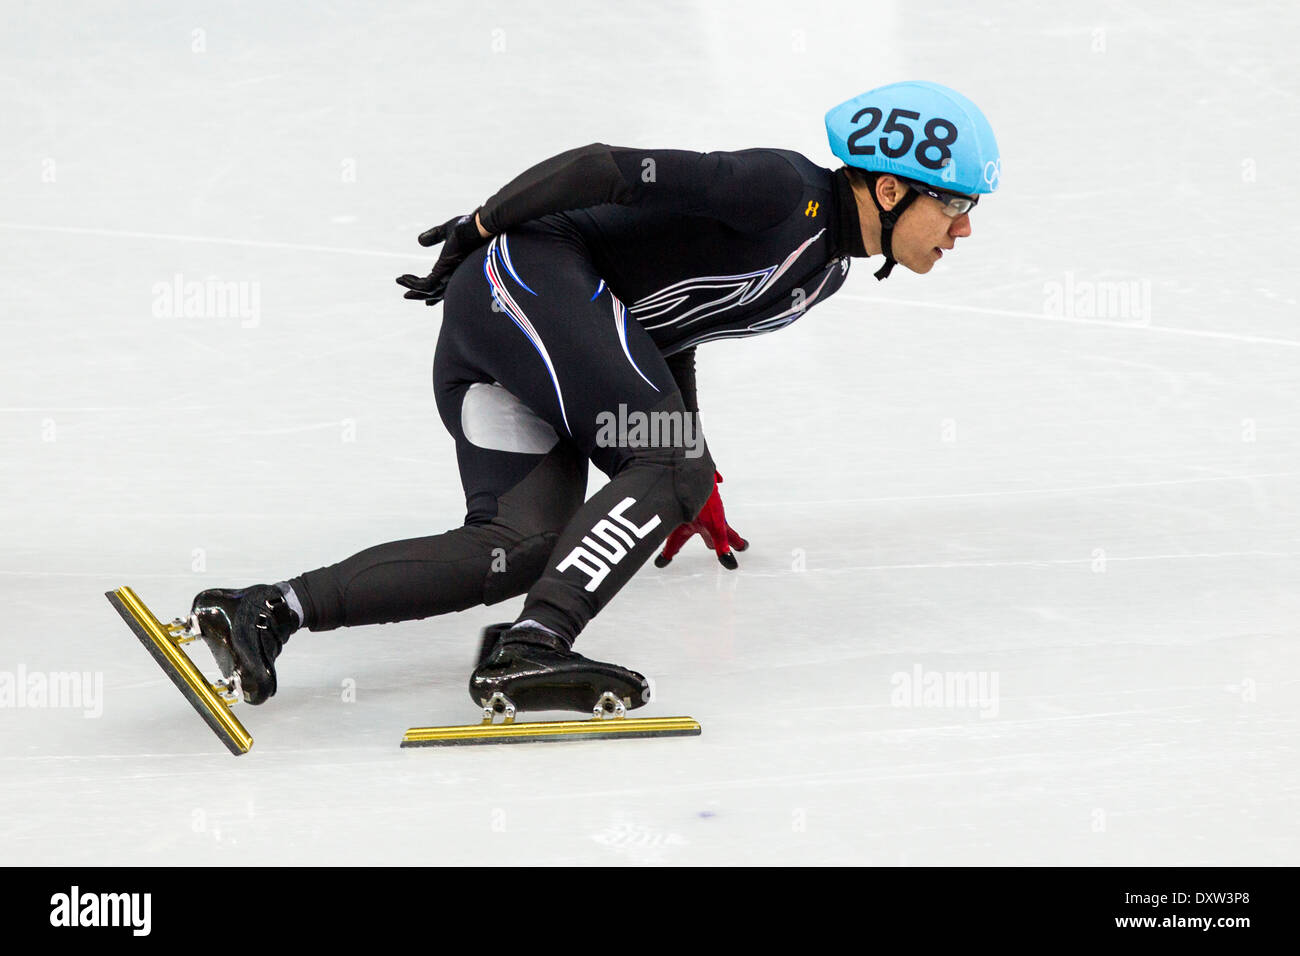 J.R. Celski (USA) compitiendo en los hombres de la pista corta 1500m de semifinales de los Juegos Olímpicos de Invierno, Sochi 2014 Foto de stock